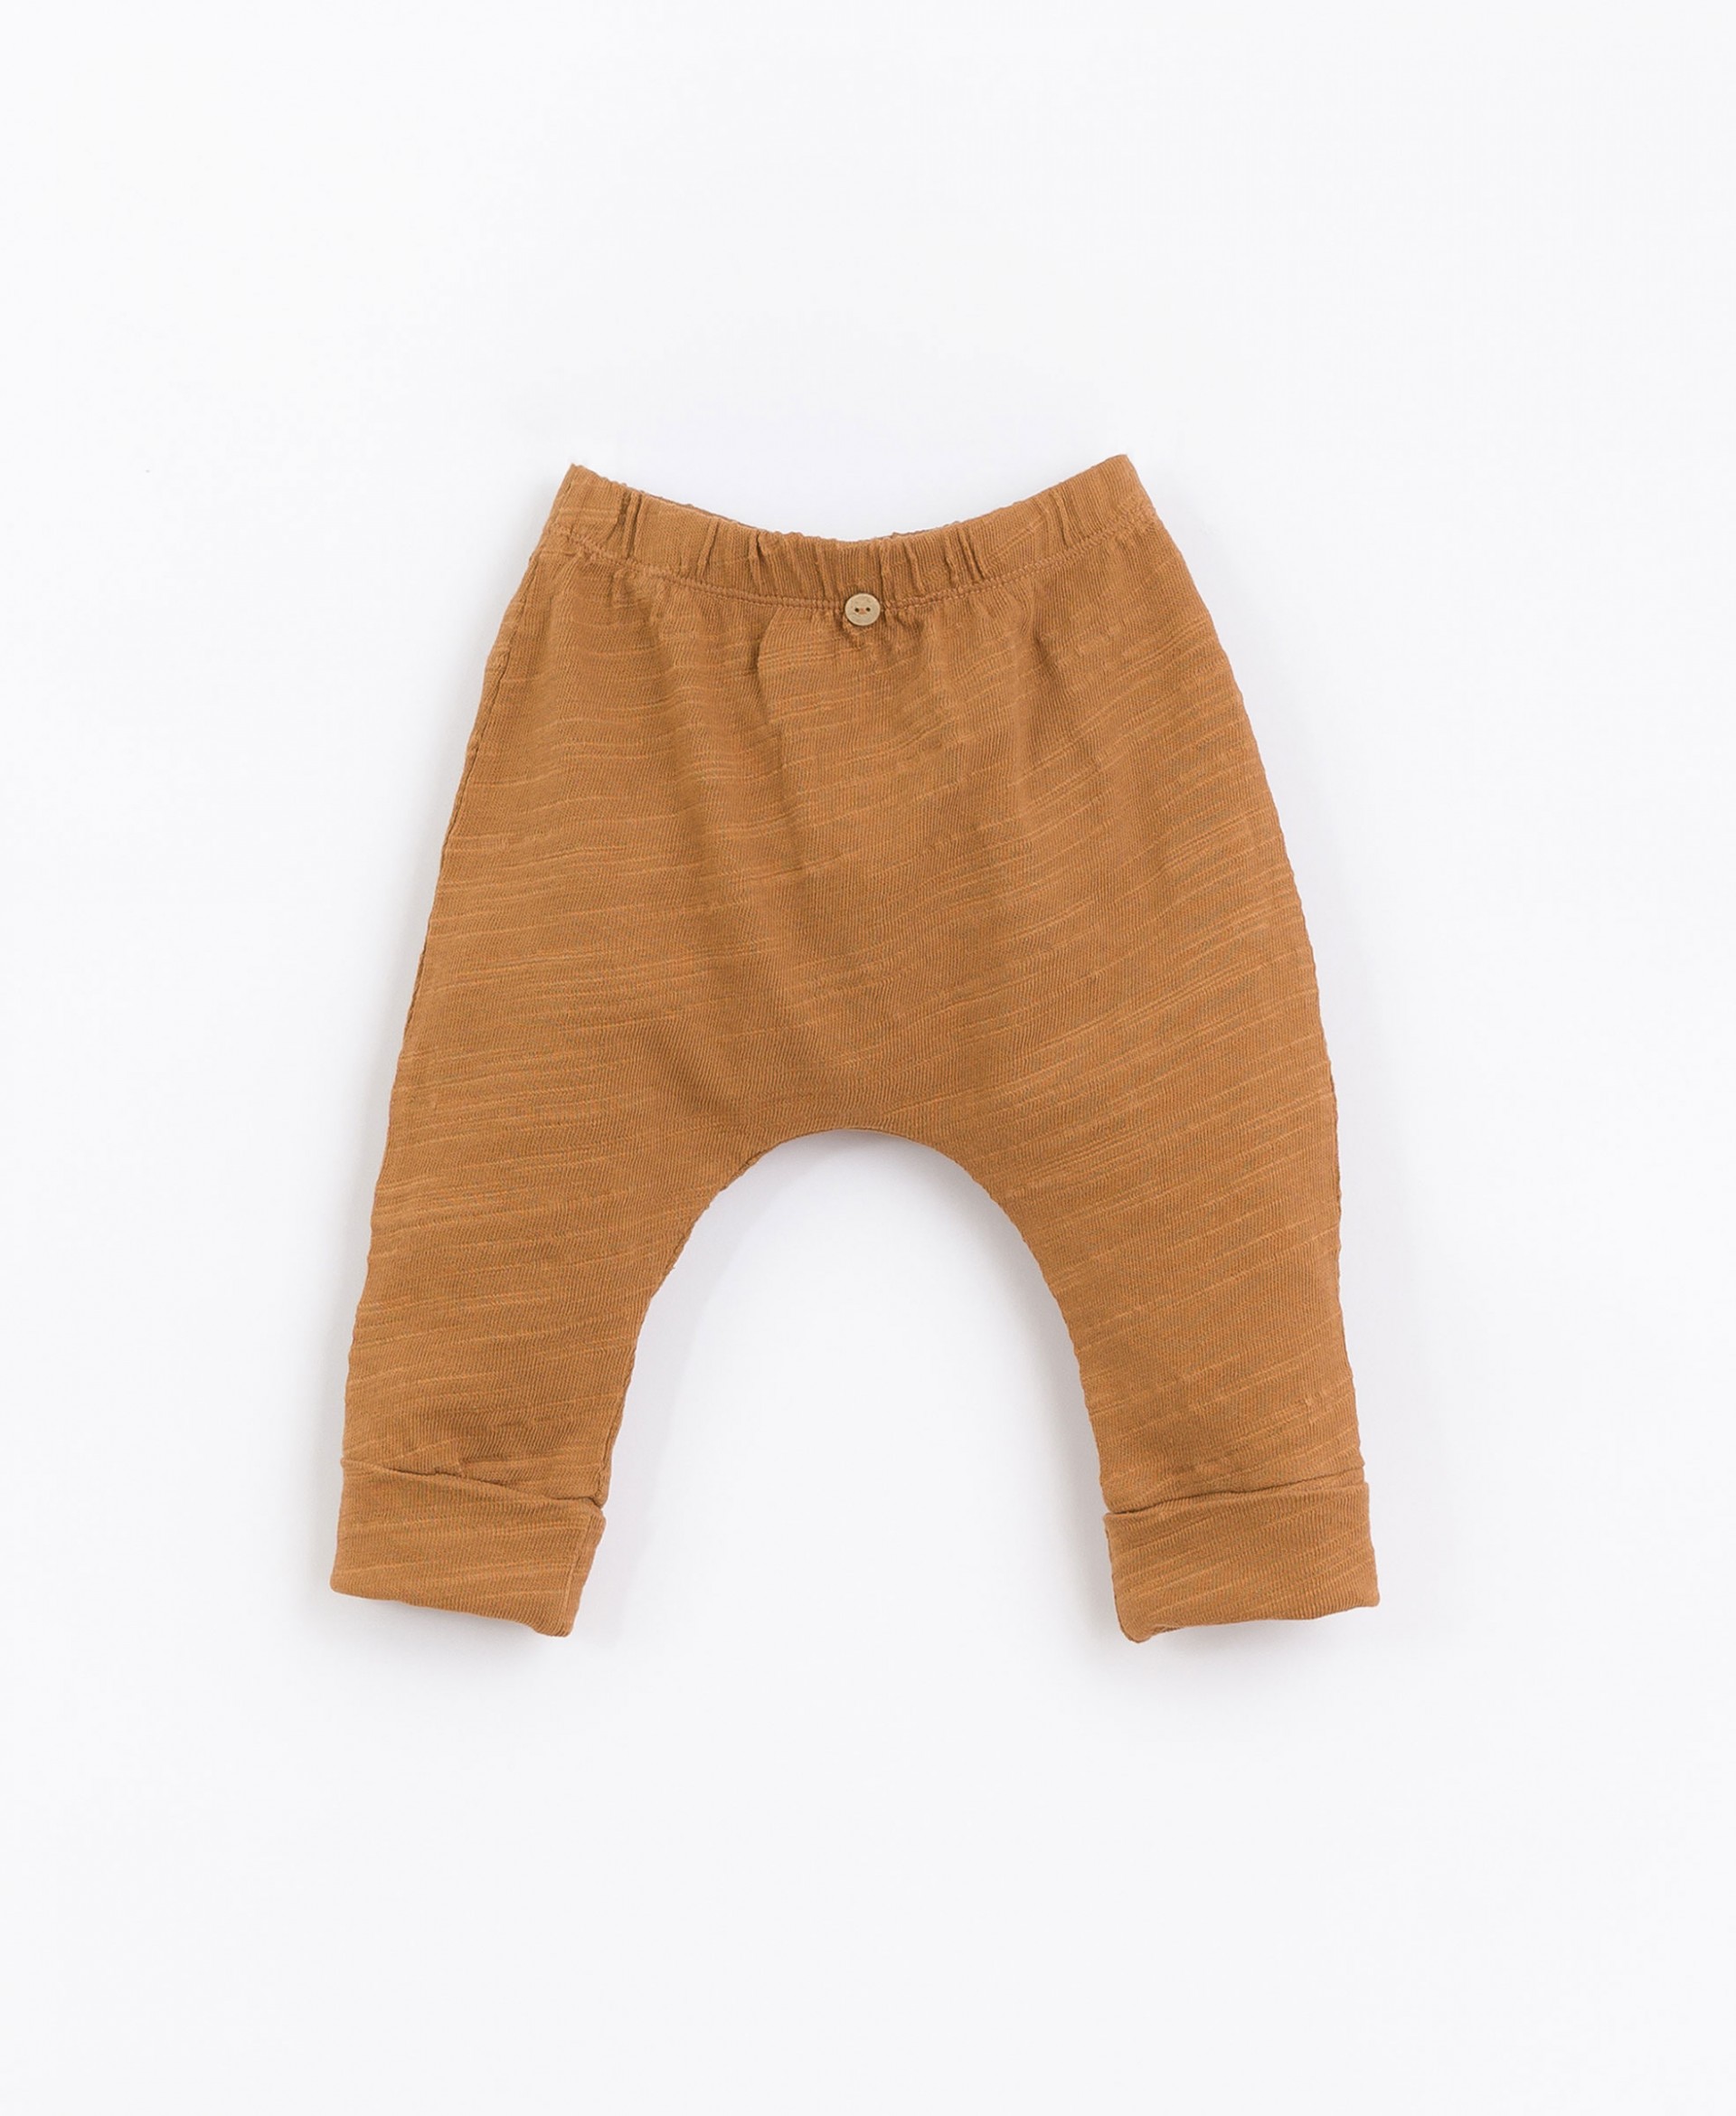 Pantaloni misto cotone biologico e cotone riciclato| Basketry